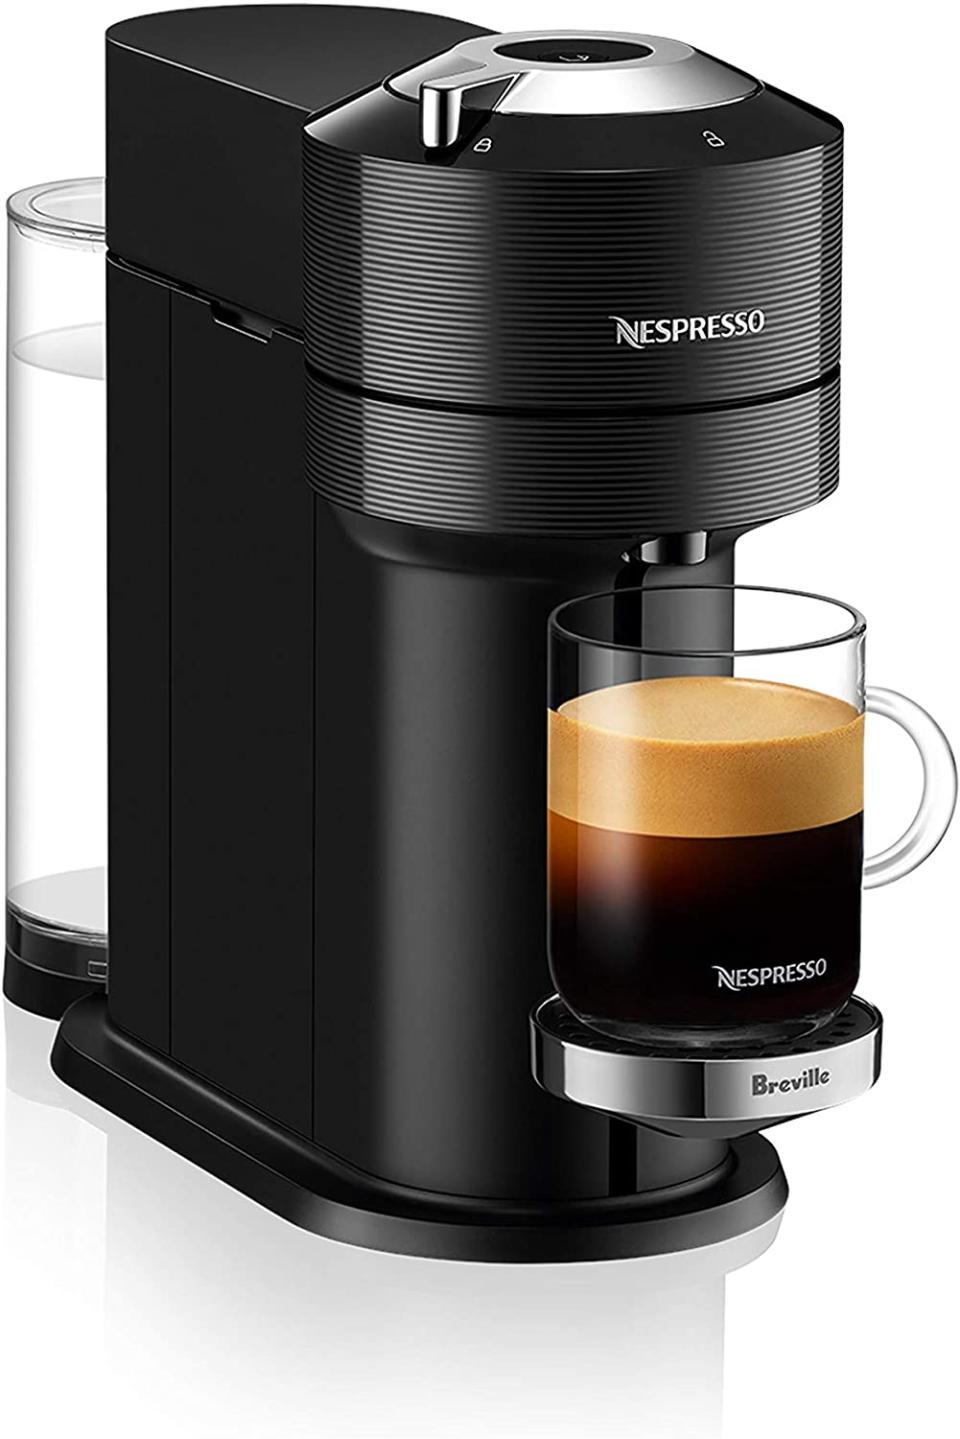 Nespresso by Breville Vertuo Next Classic Black Coffee and Espresso Machine. Image via Amazon.